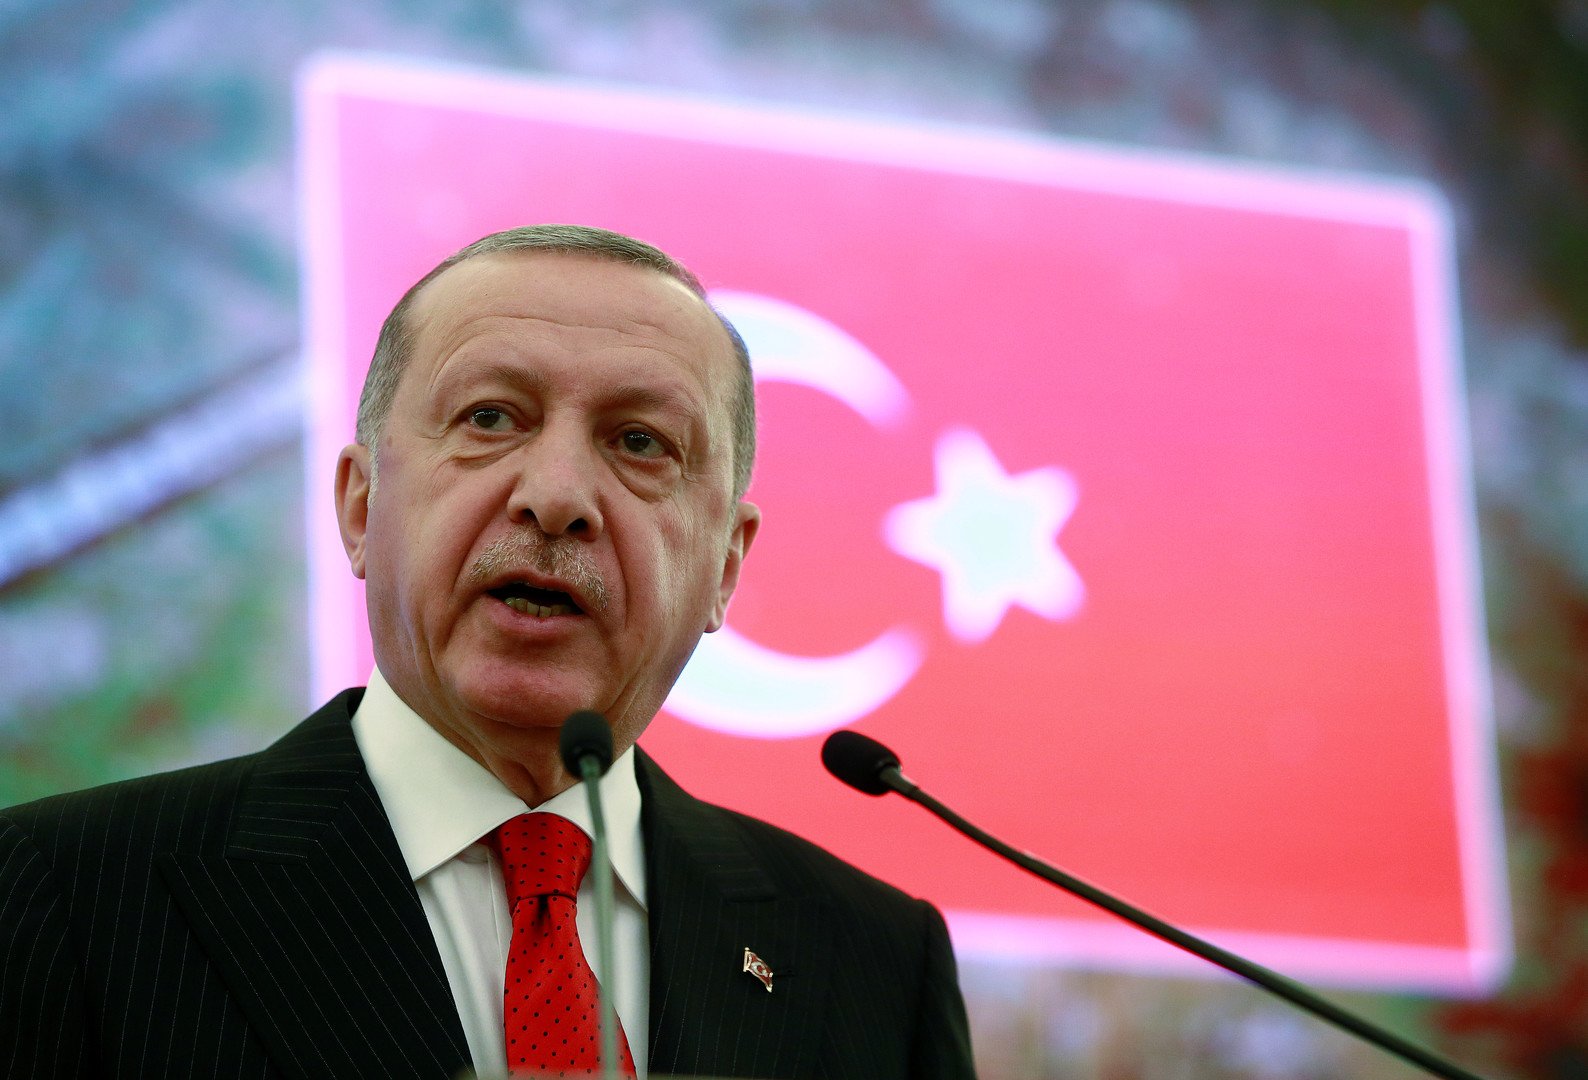 أردوغان في صلاة الغائب على مرسي: يوجد في تركيا أمثال للسيسي